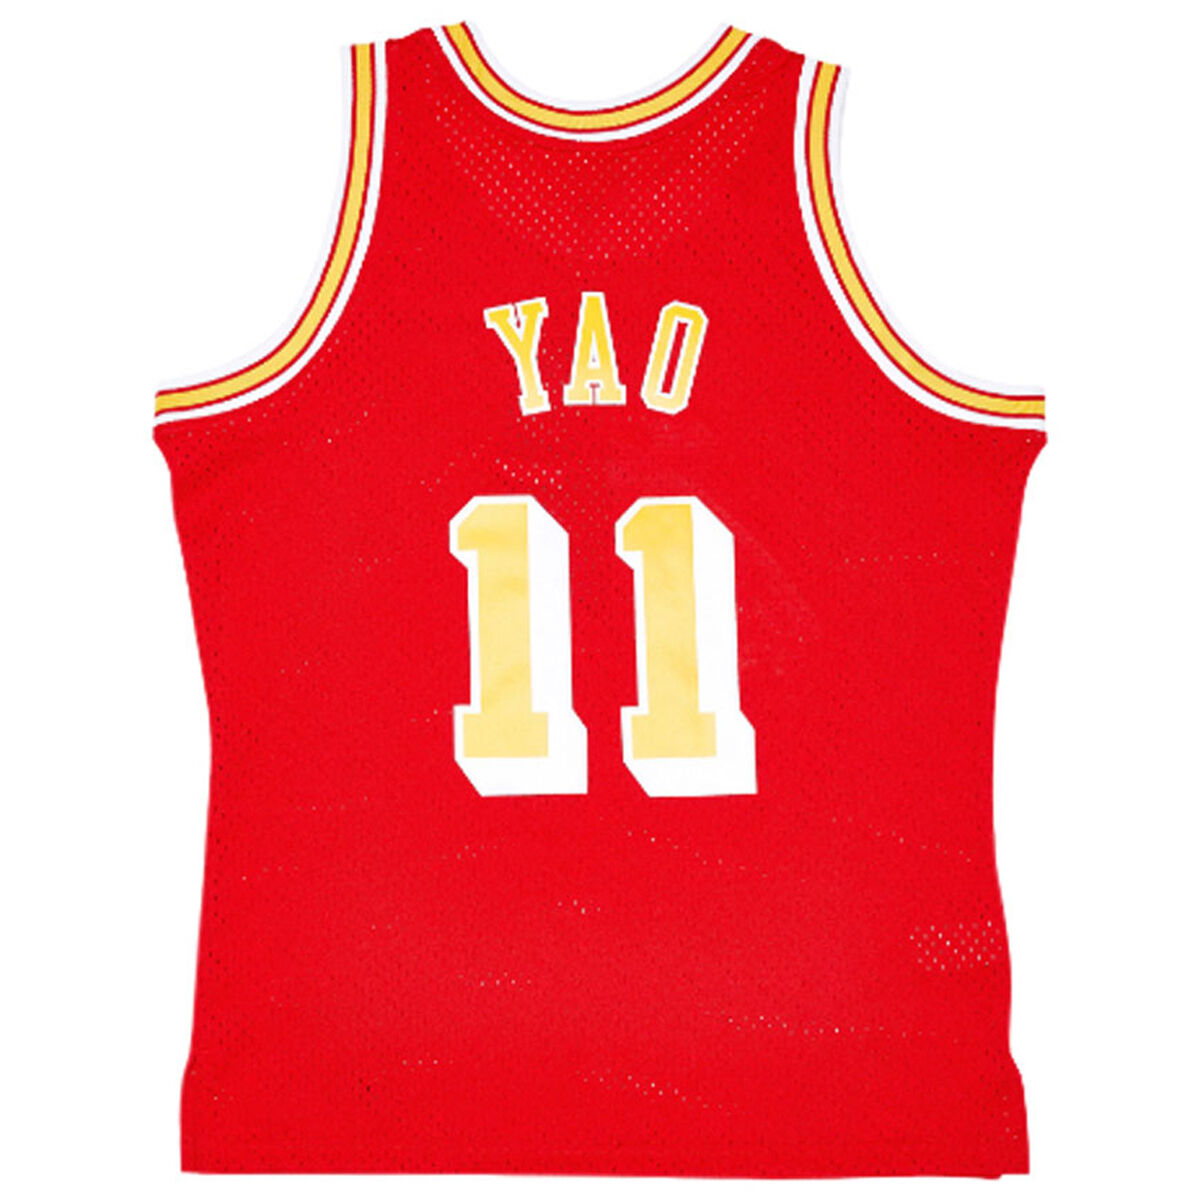  Mitchell & Ness Houston Rockets Yao Ming 2002 Road Swingman  Jersey (X-Large) : Sports & Outdoors